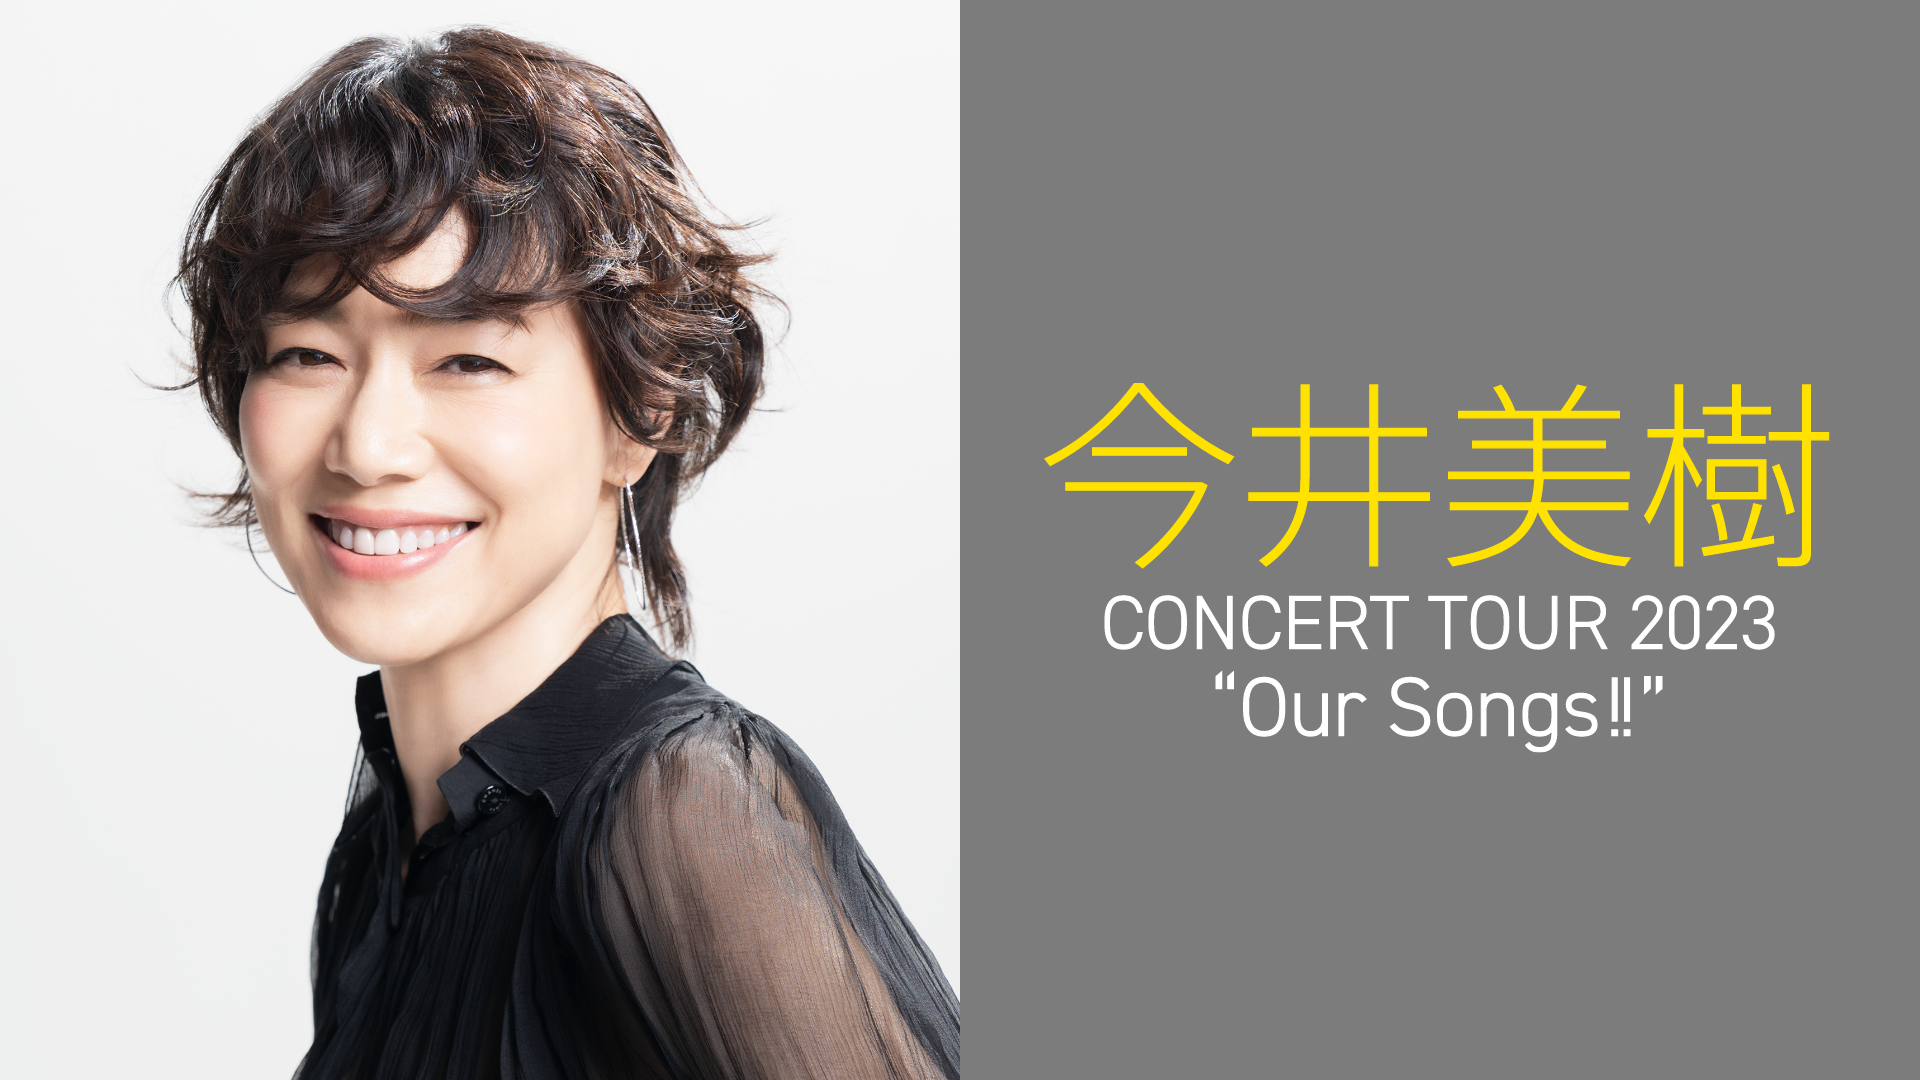 今井美樹 CONCERT TOUR 2023 “Our Songs!!”(音楽・ライブ / 2023) - 動画配信 | U-NEXT  31日間無料トライアル